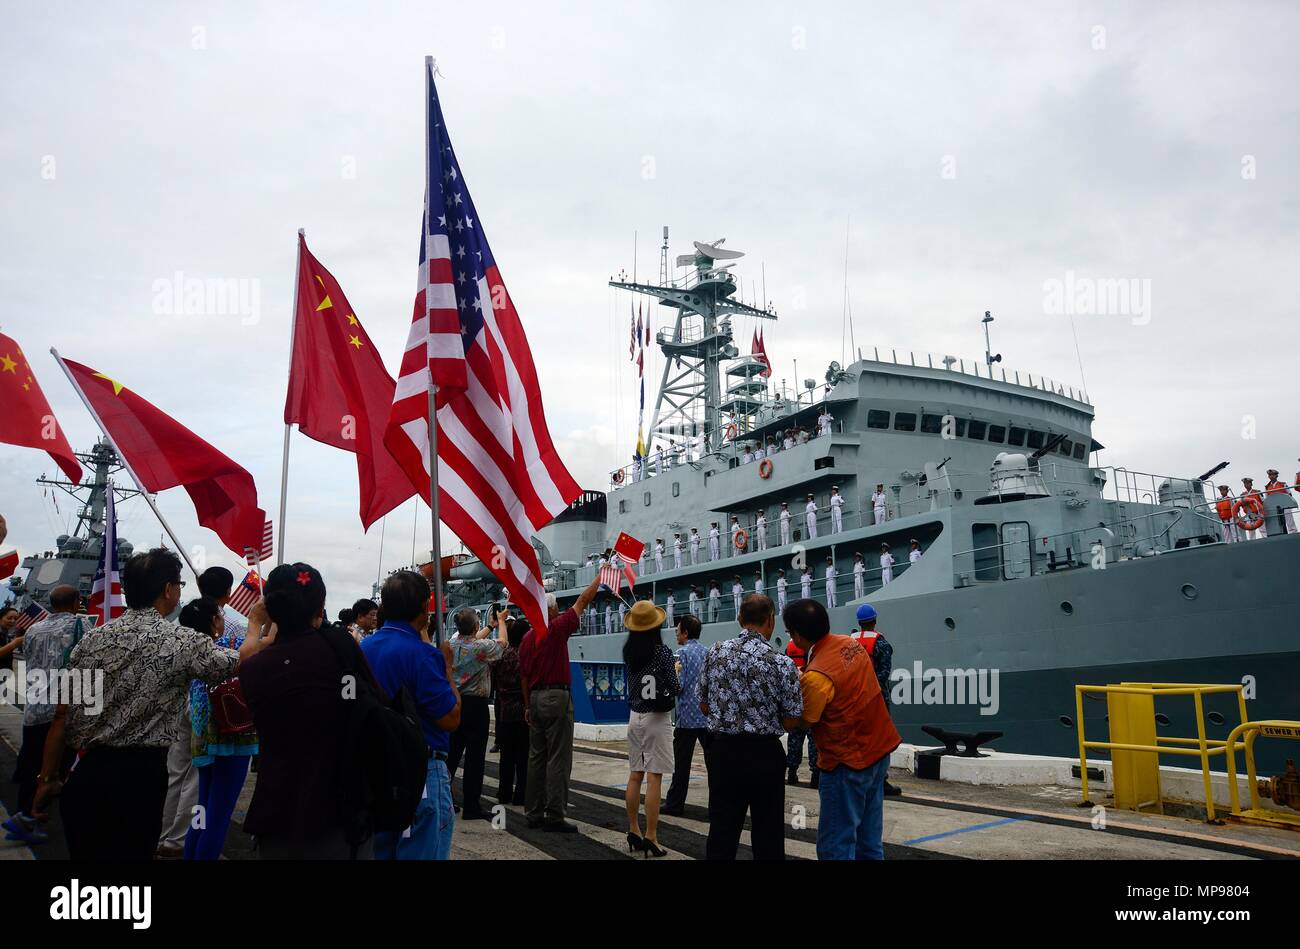 La Armada del Ejército Popular de Liberación Chino Tipo 679 cadetes barco de entrenamiento Zheng llega a la base conjunta Pearl Harbor-Hickam Octubre 12, 2015 en Pearl Harbor, Hawai. (Foto por Laurie Dexter a través Planetpix) Foto de stock